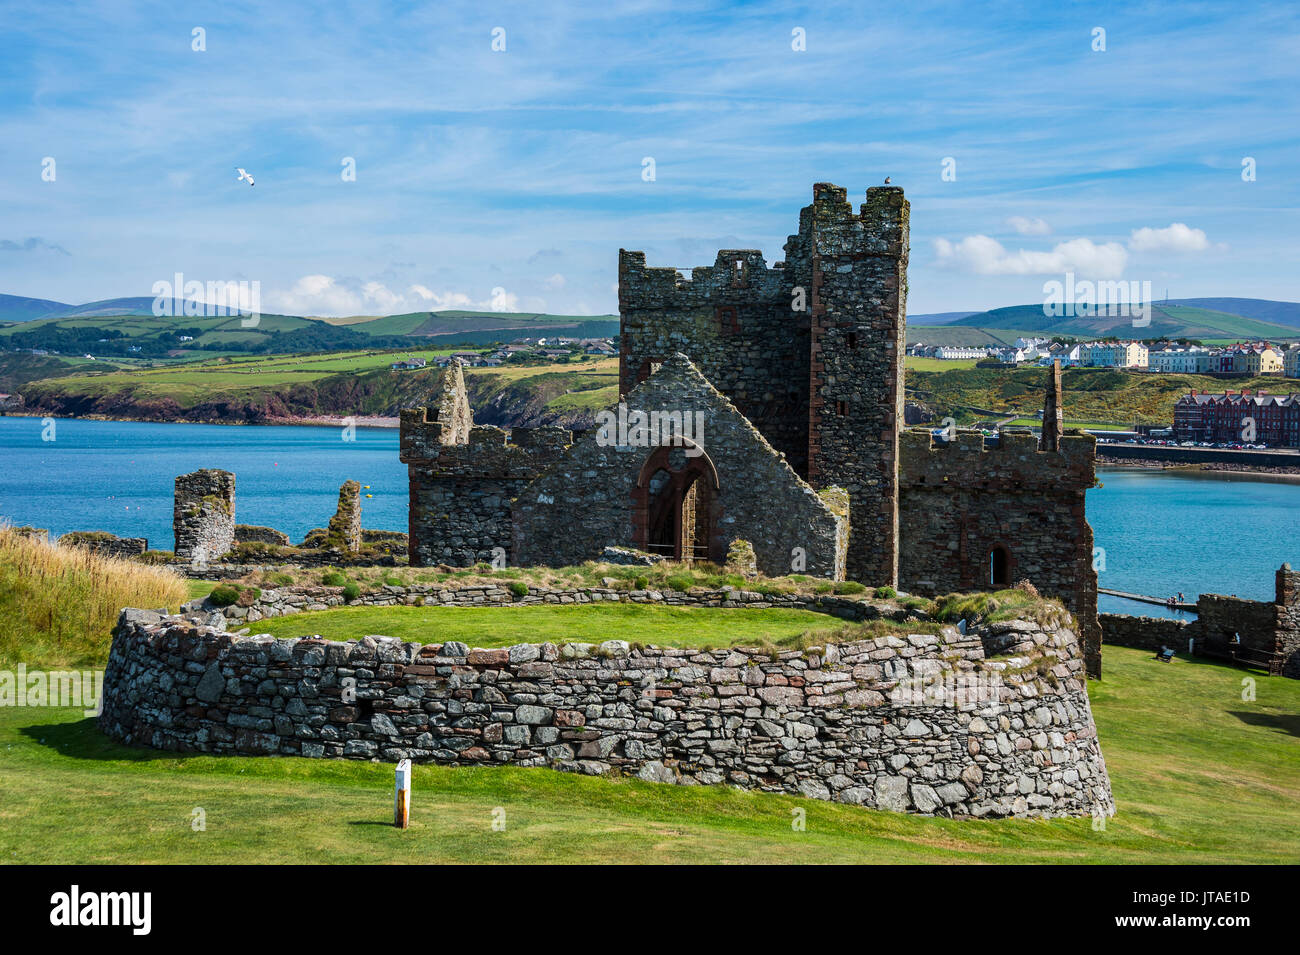 Peel Castle, Peel, Isle of Man, crown dependency of the United Kingdom, Europe Stock Photo